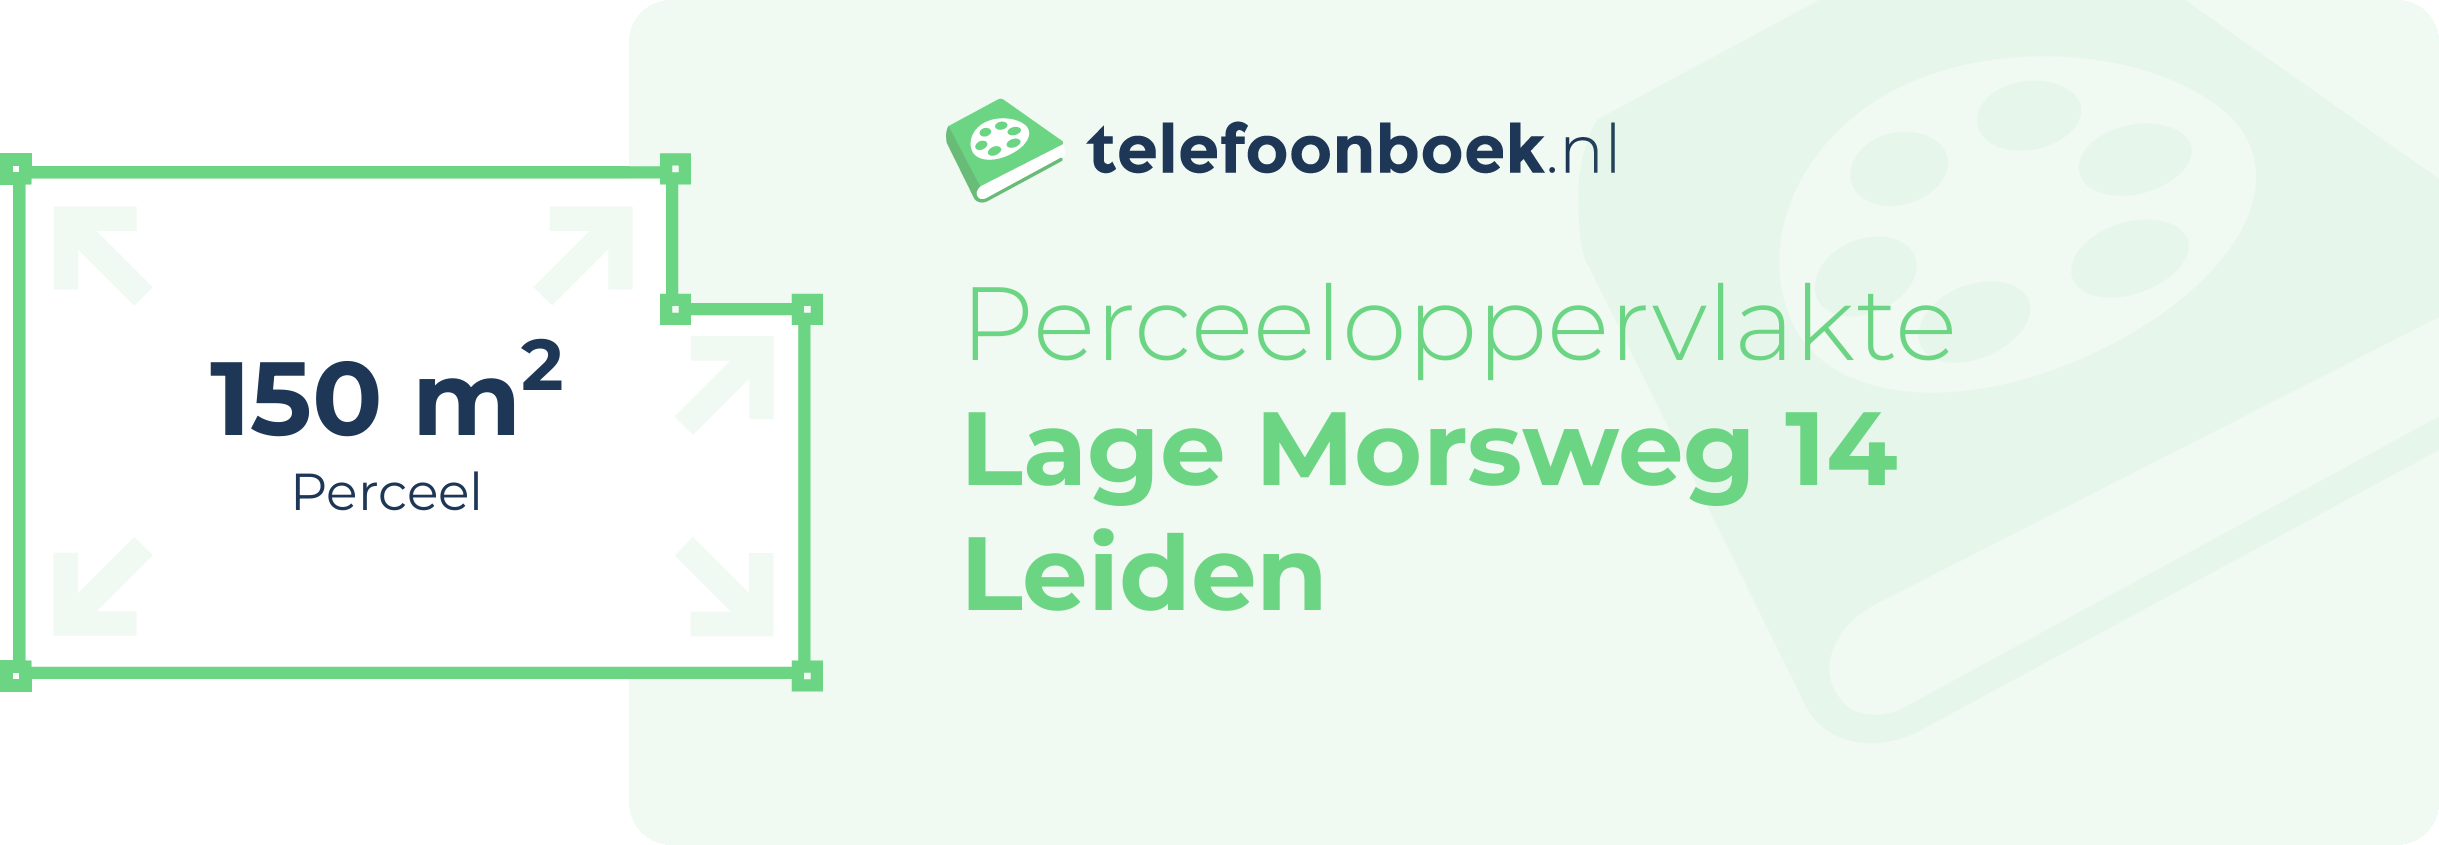 Perceeloppervlakte Lage Morsweg 14 Leiden